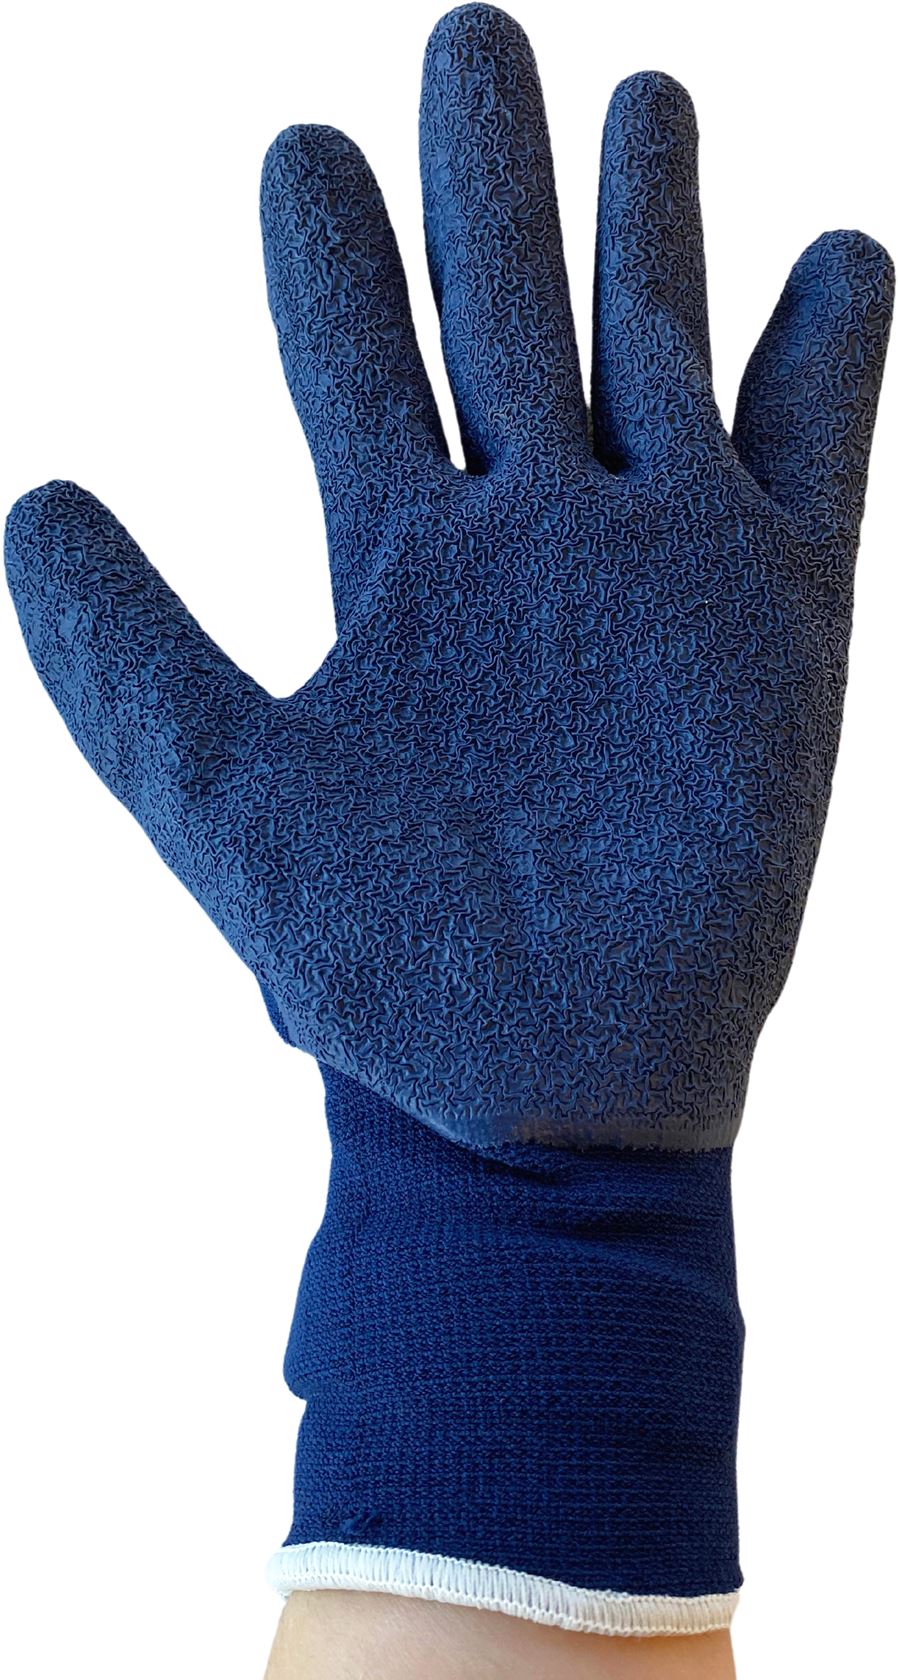 Handschoen-edialux-blauw